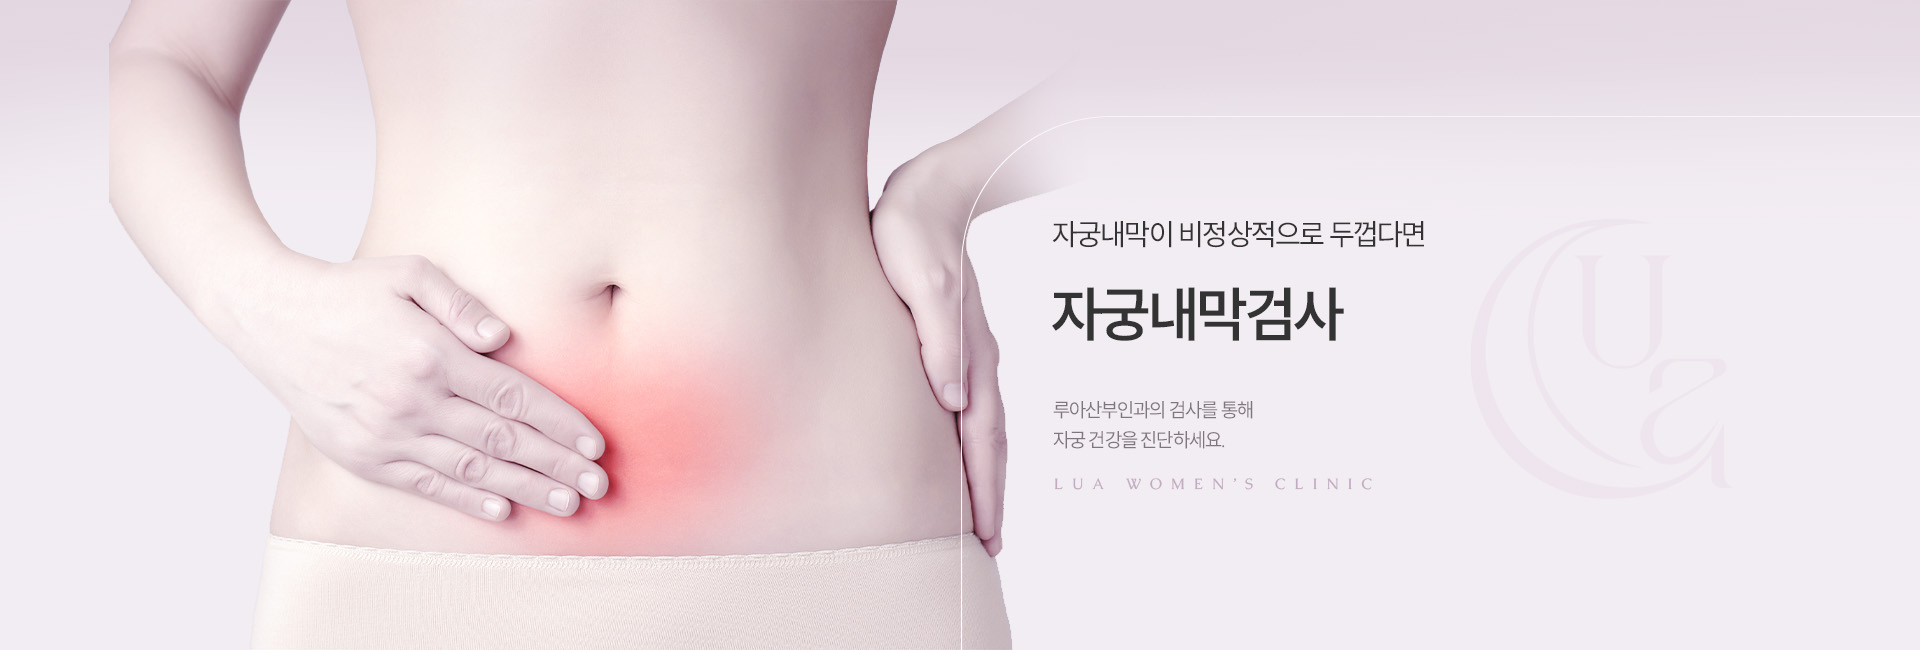 자궁내막검사 키비주얼01